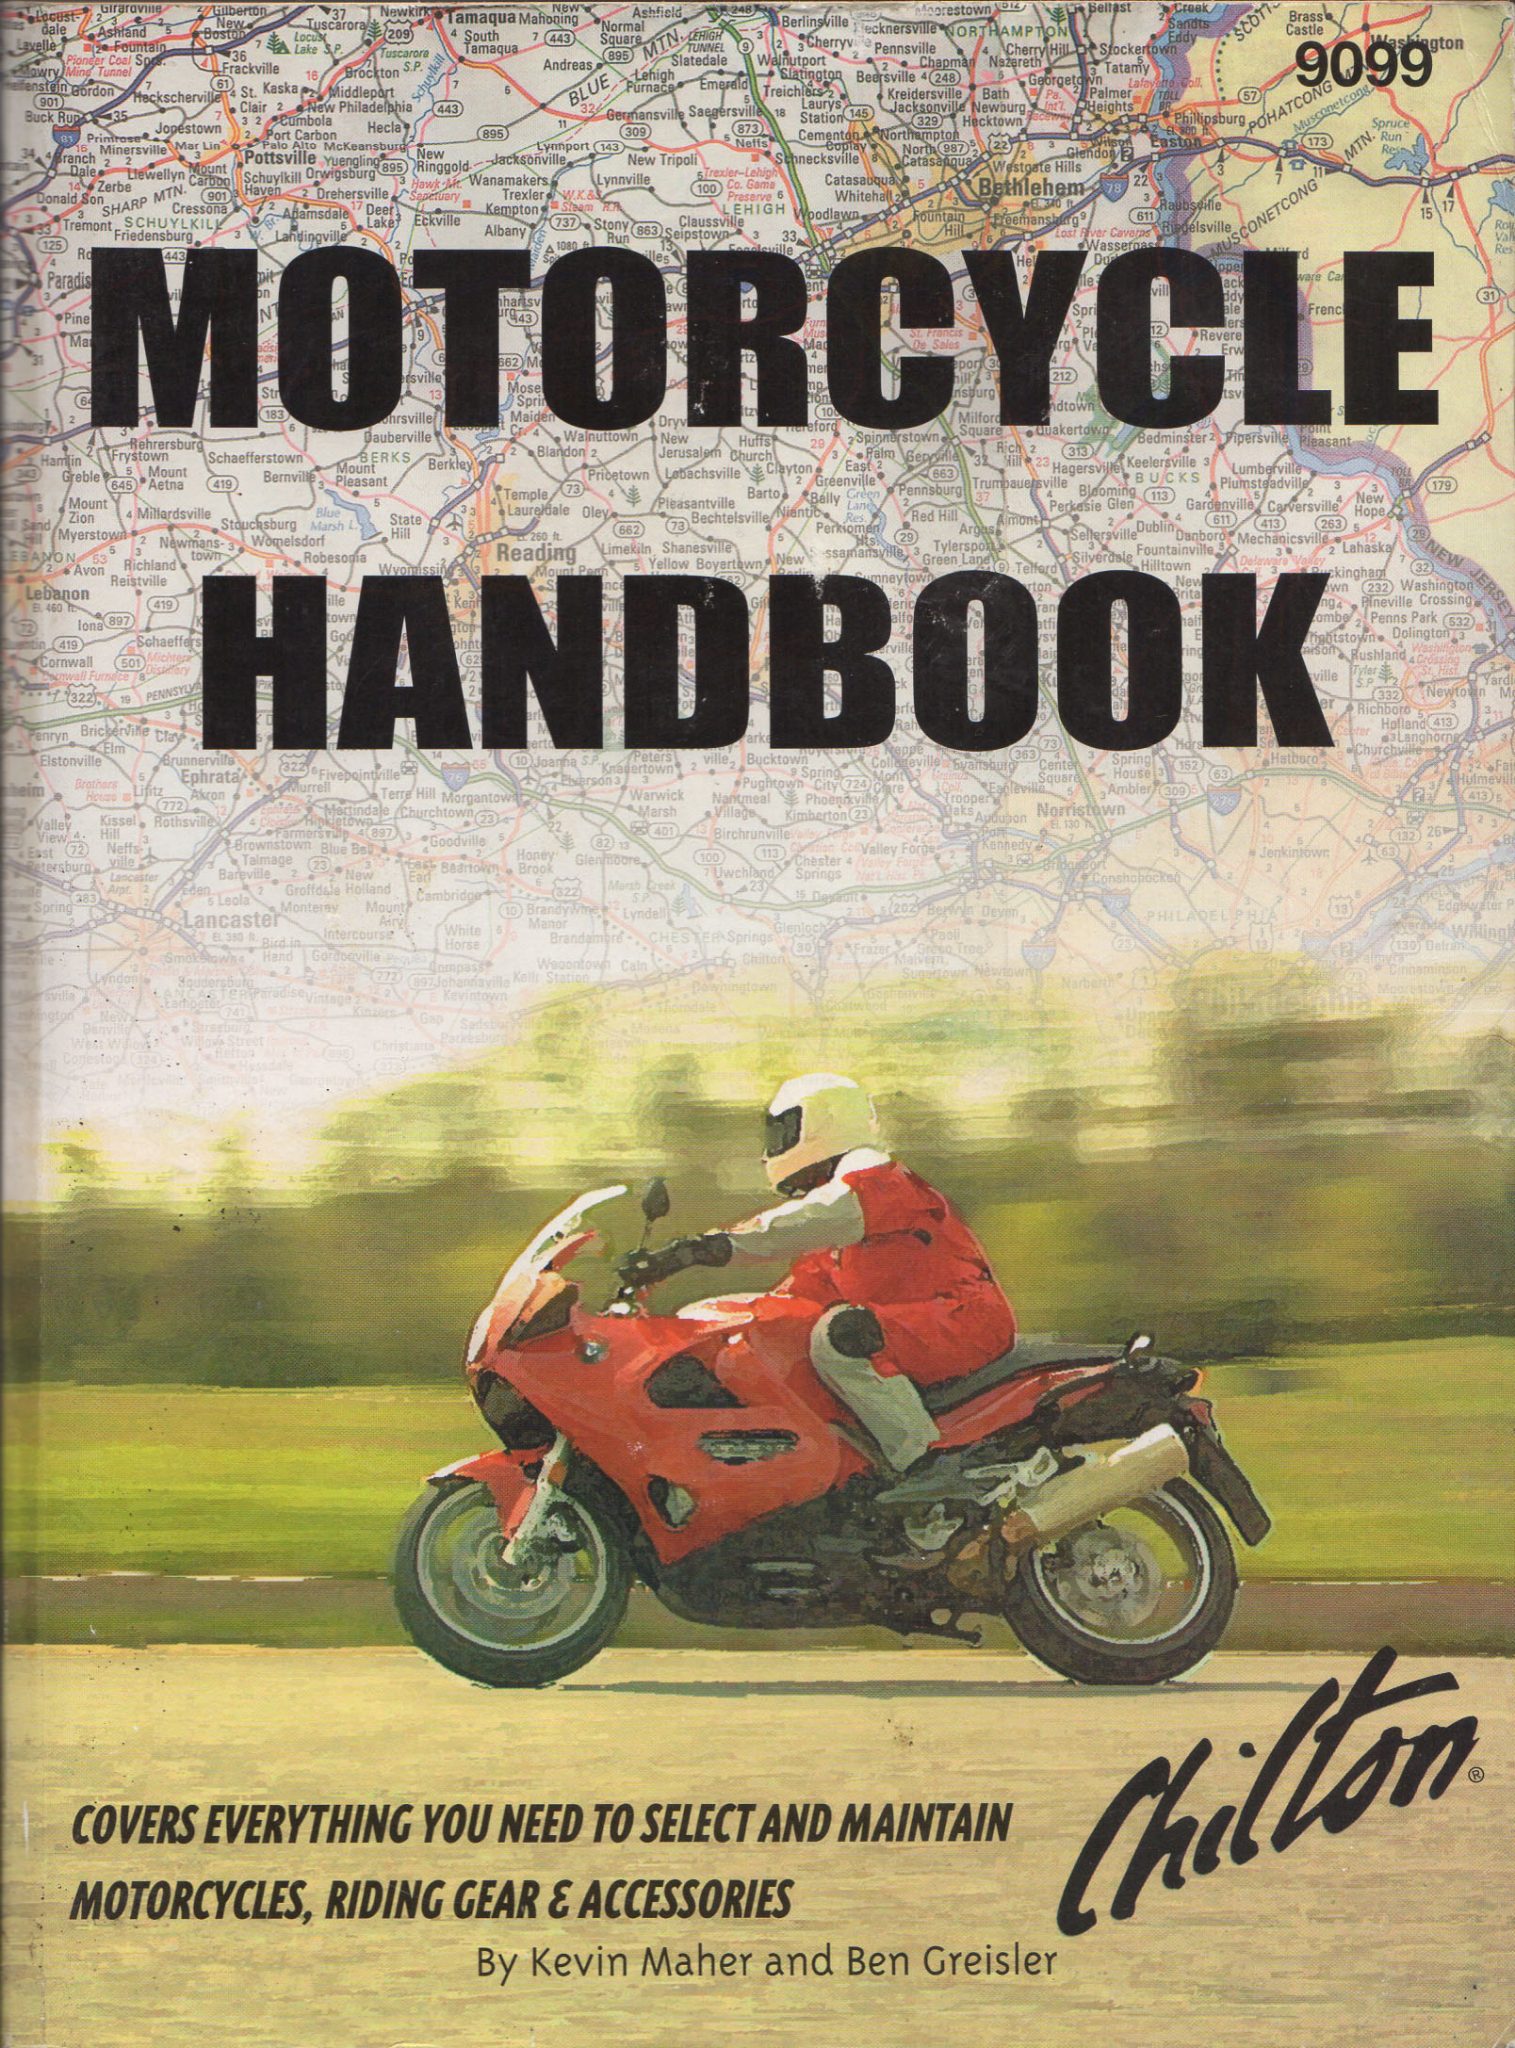 MOTORCYCLE HANDBOOK - Kevin Maher & Ben Greisler, 1998 Chilton